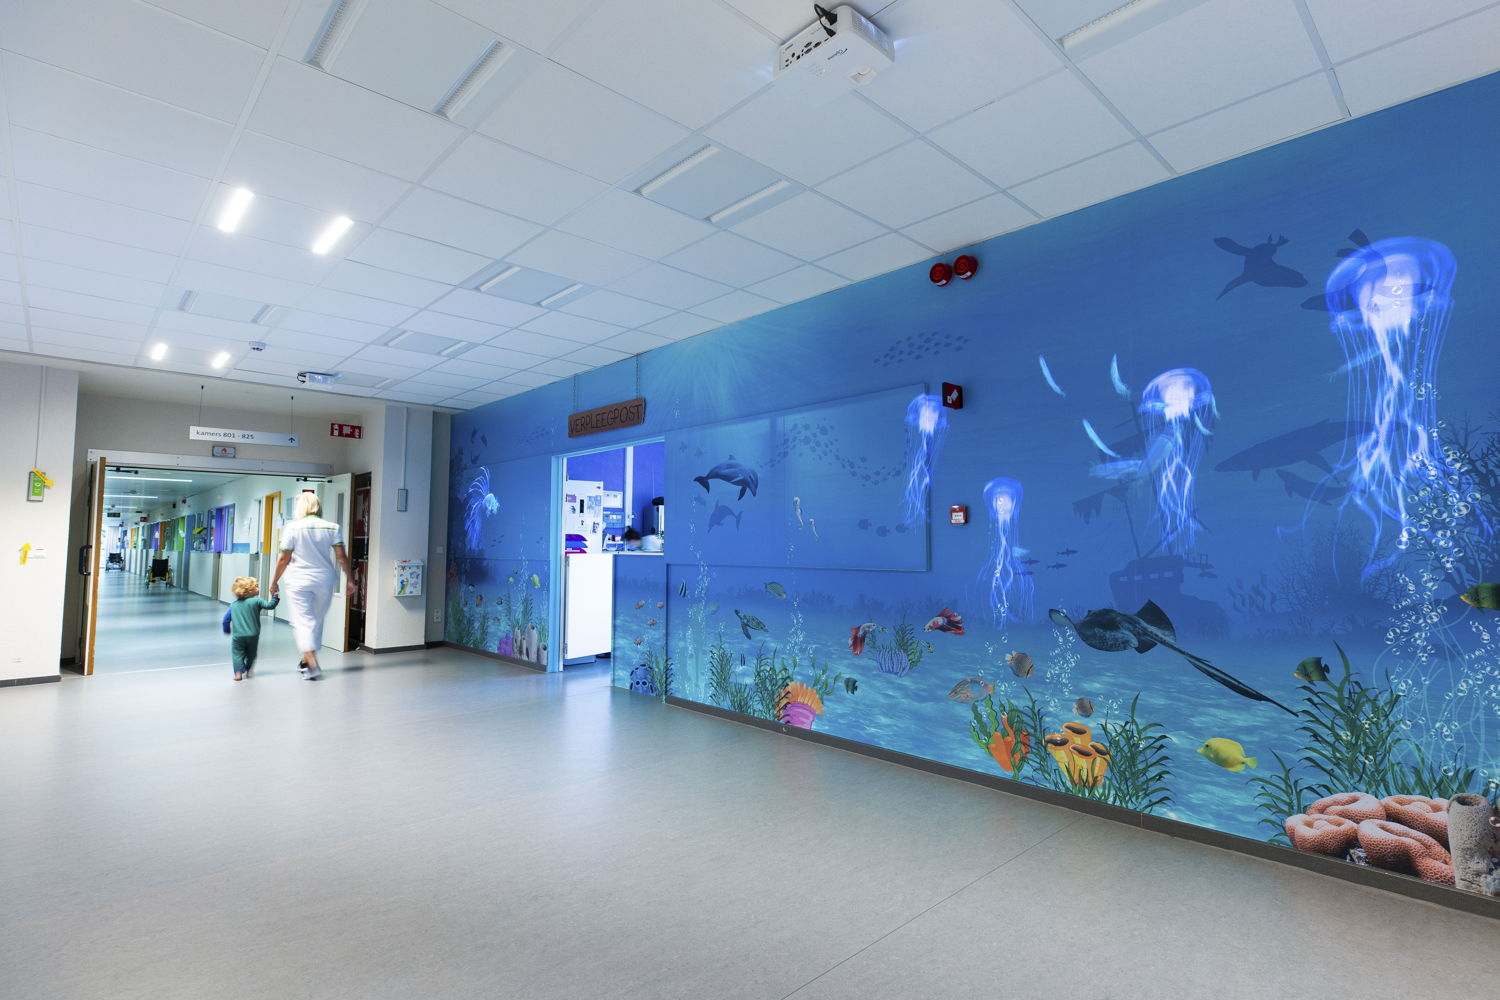 Aan de verpleegpost van ZNA Koningin Paola Kinderziekenhuis projecteert een beamer bewegende beelden van vissen. (Credit: ZNA / Dirk Kestens)